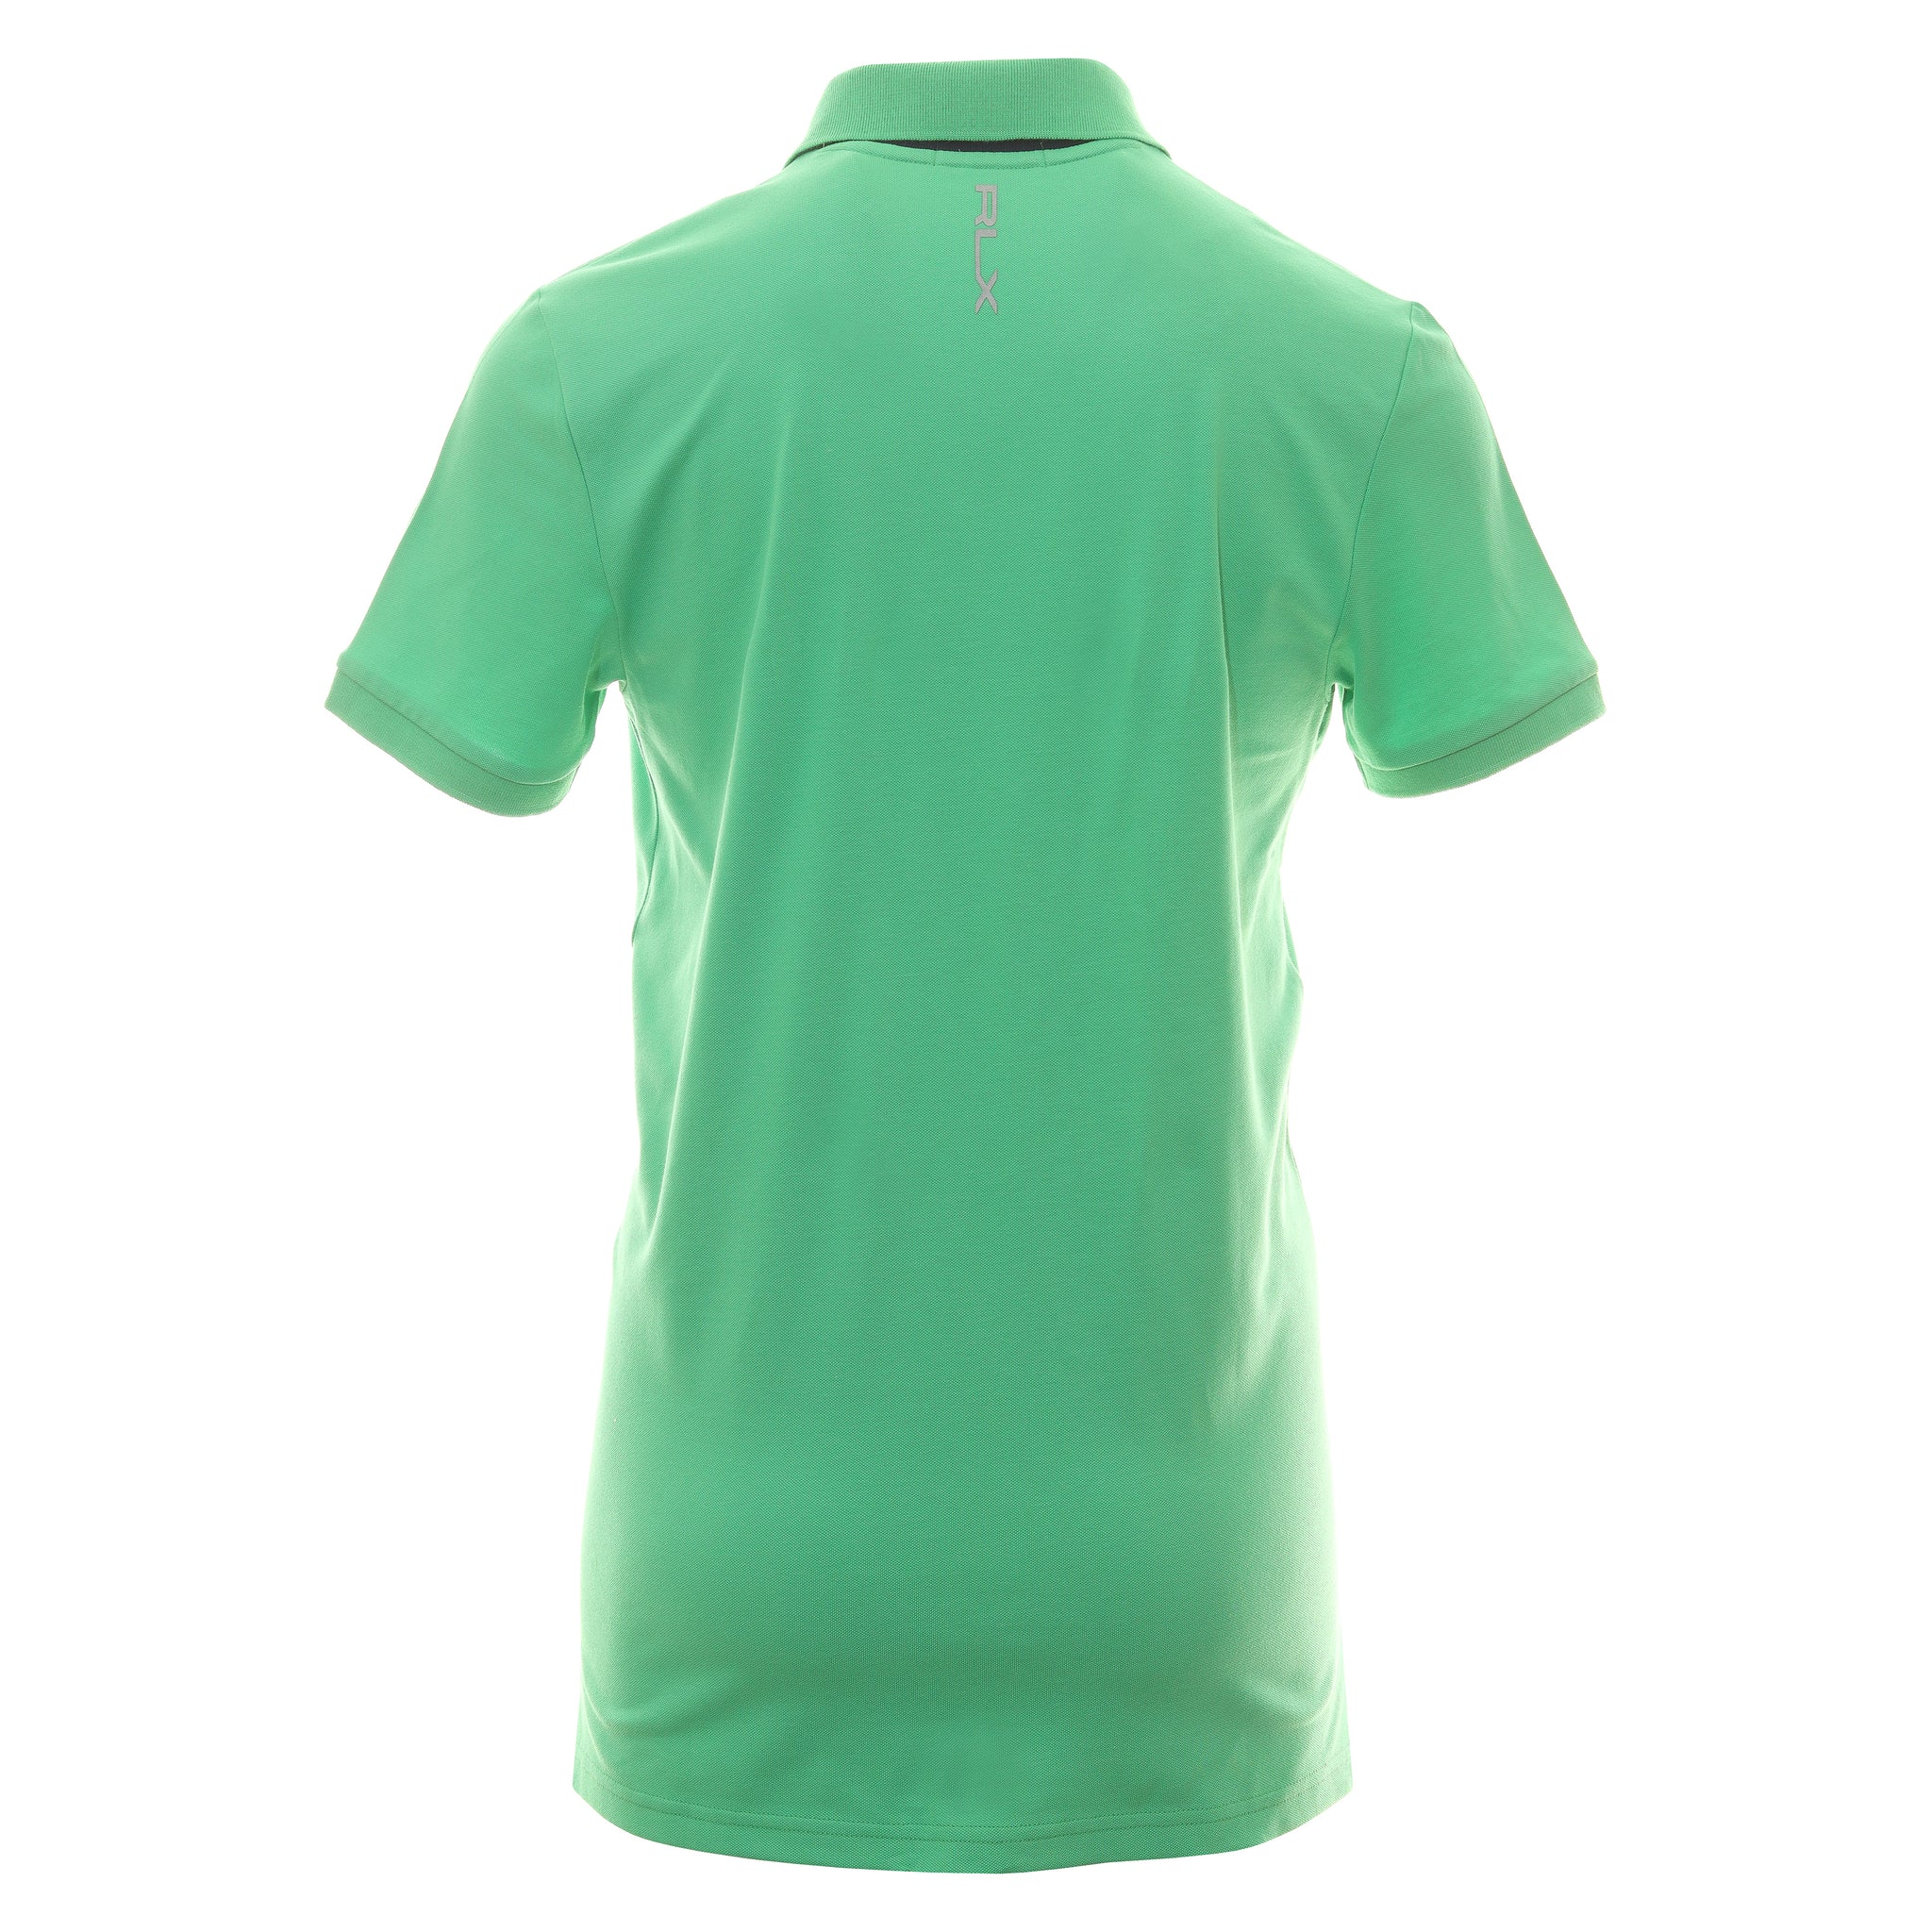 rlx-ralph-lauren-buttonless-pique-shirt-785915849-classic-kelly-003